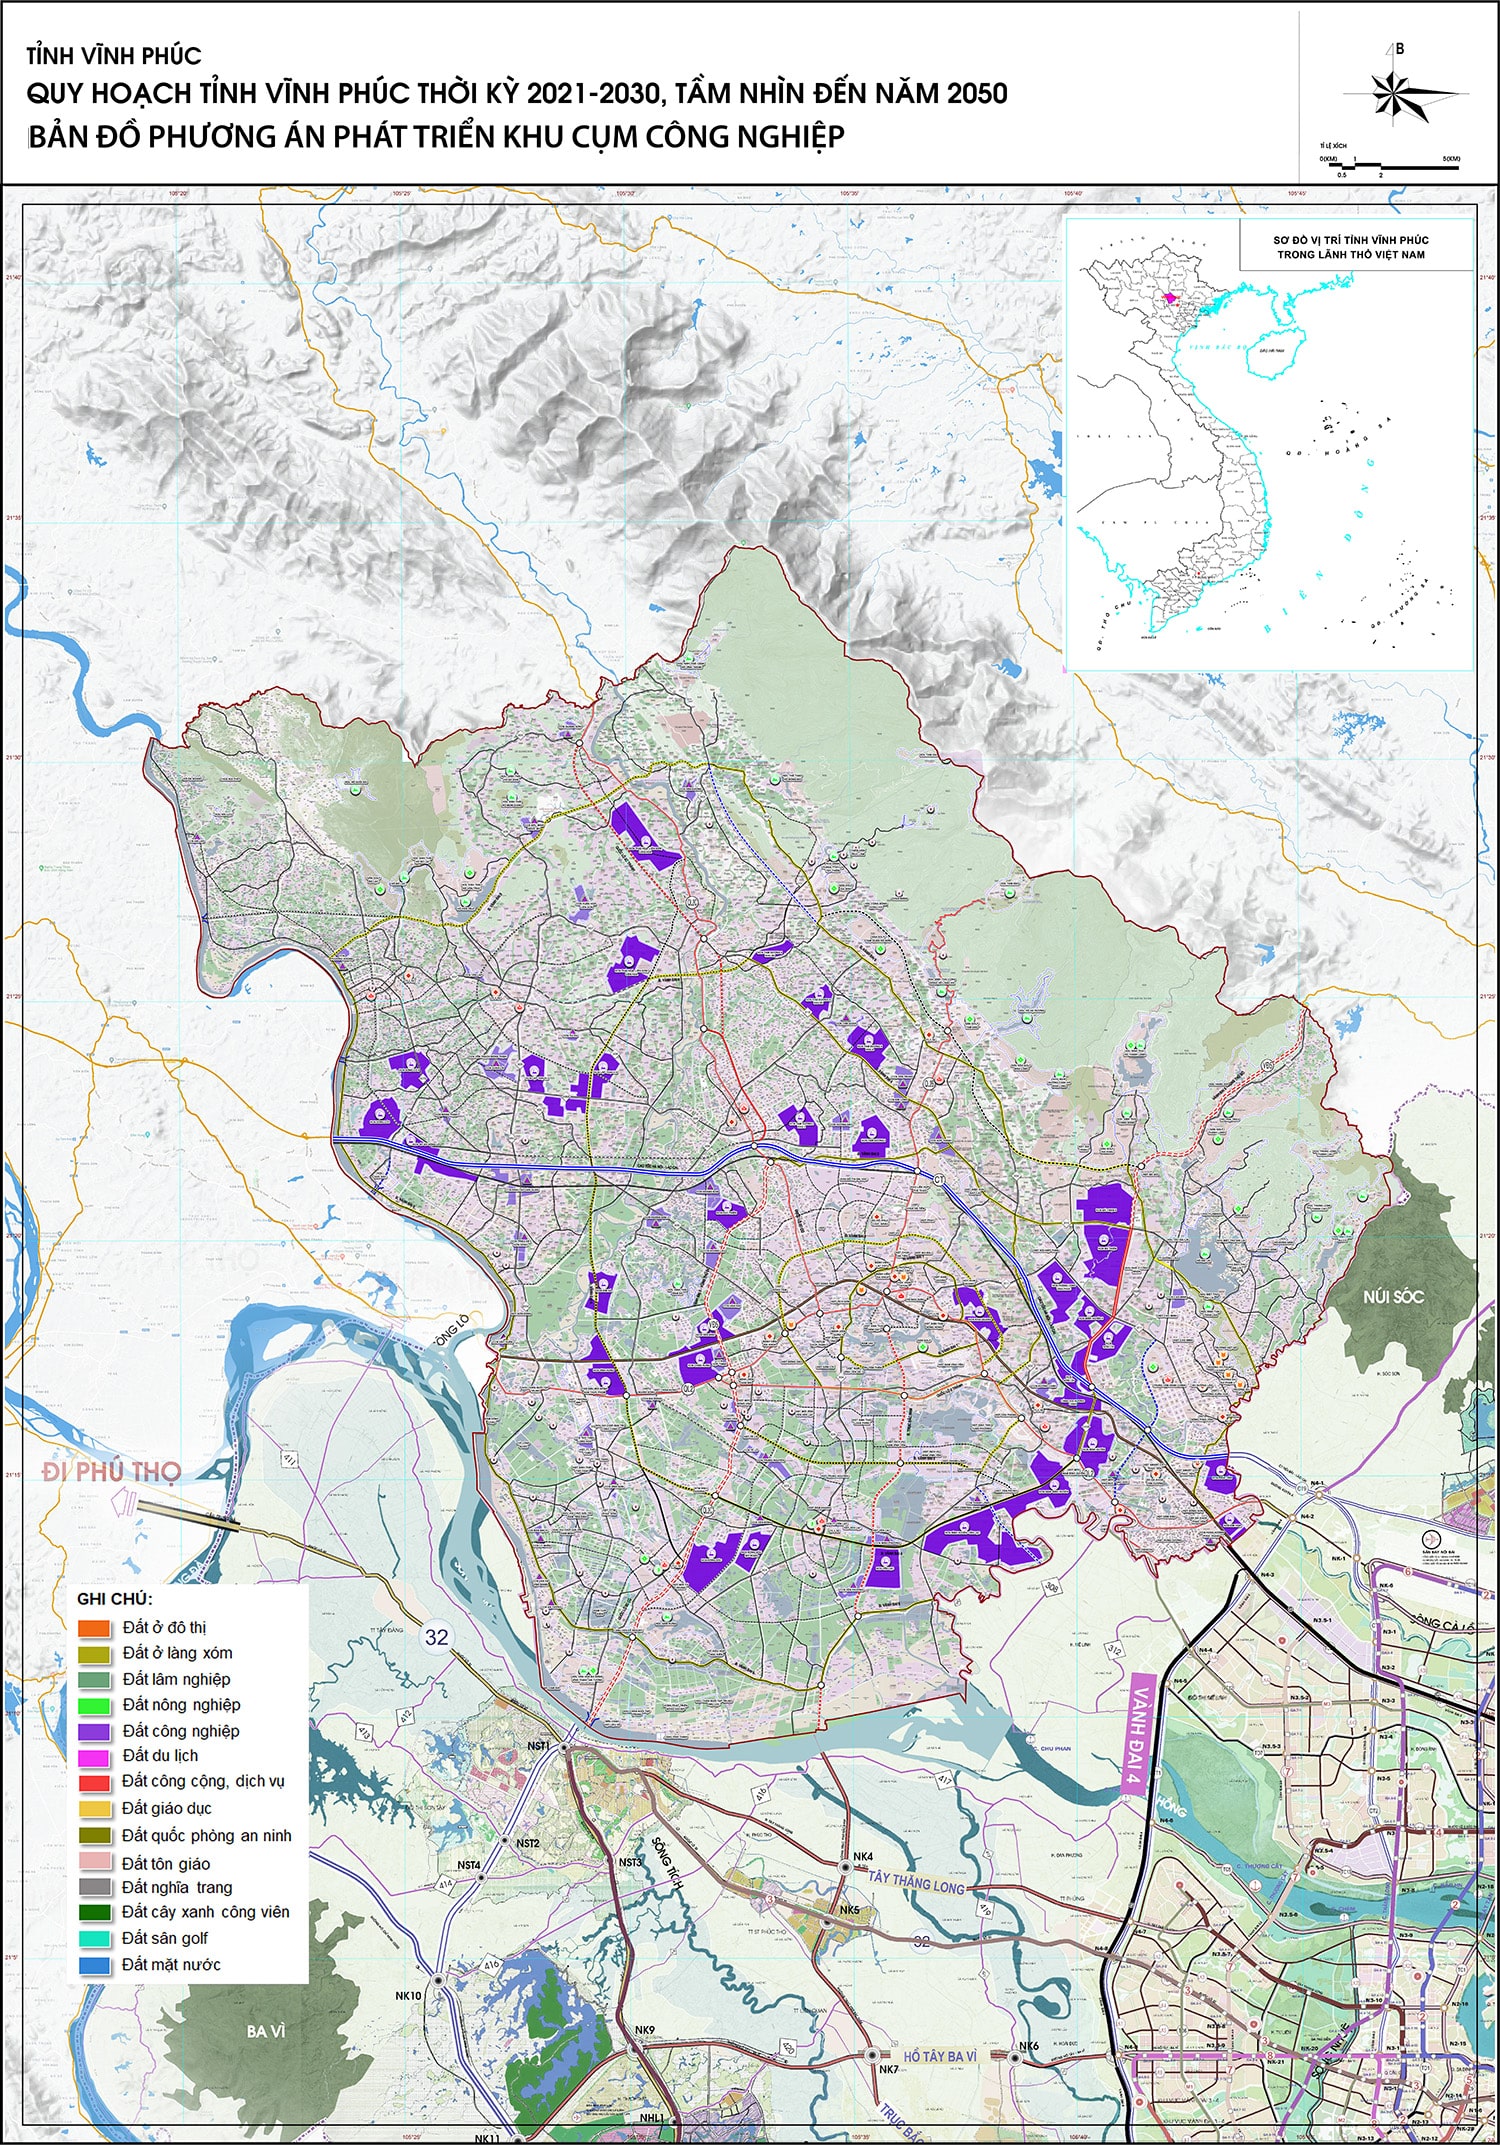 Bản đồ phương án phát triển công nghiệp tỉnh Vĩnh Phúc đến năm 2030